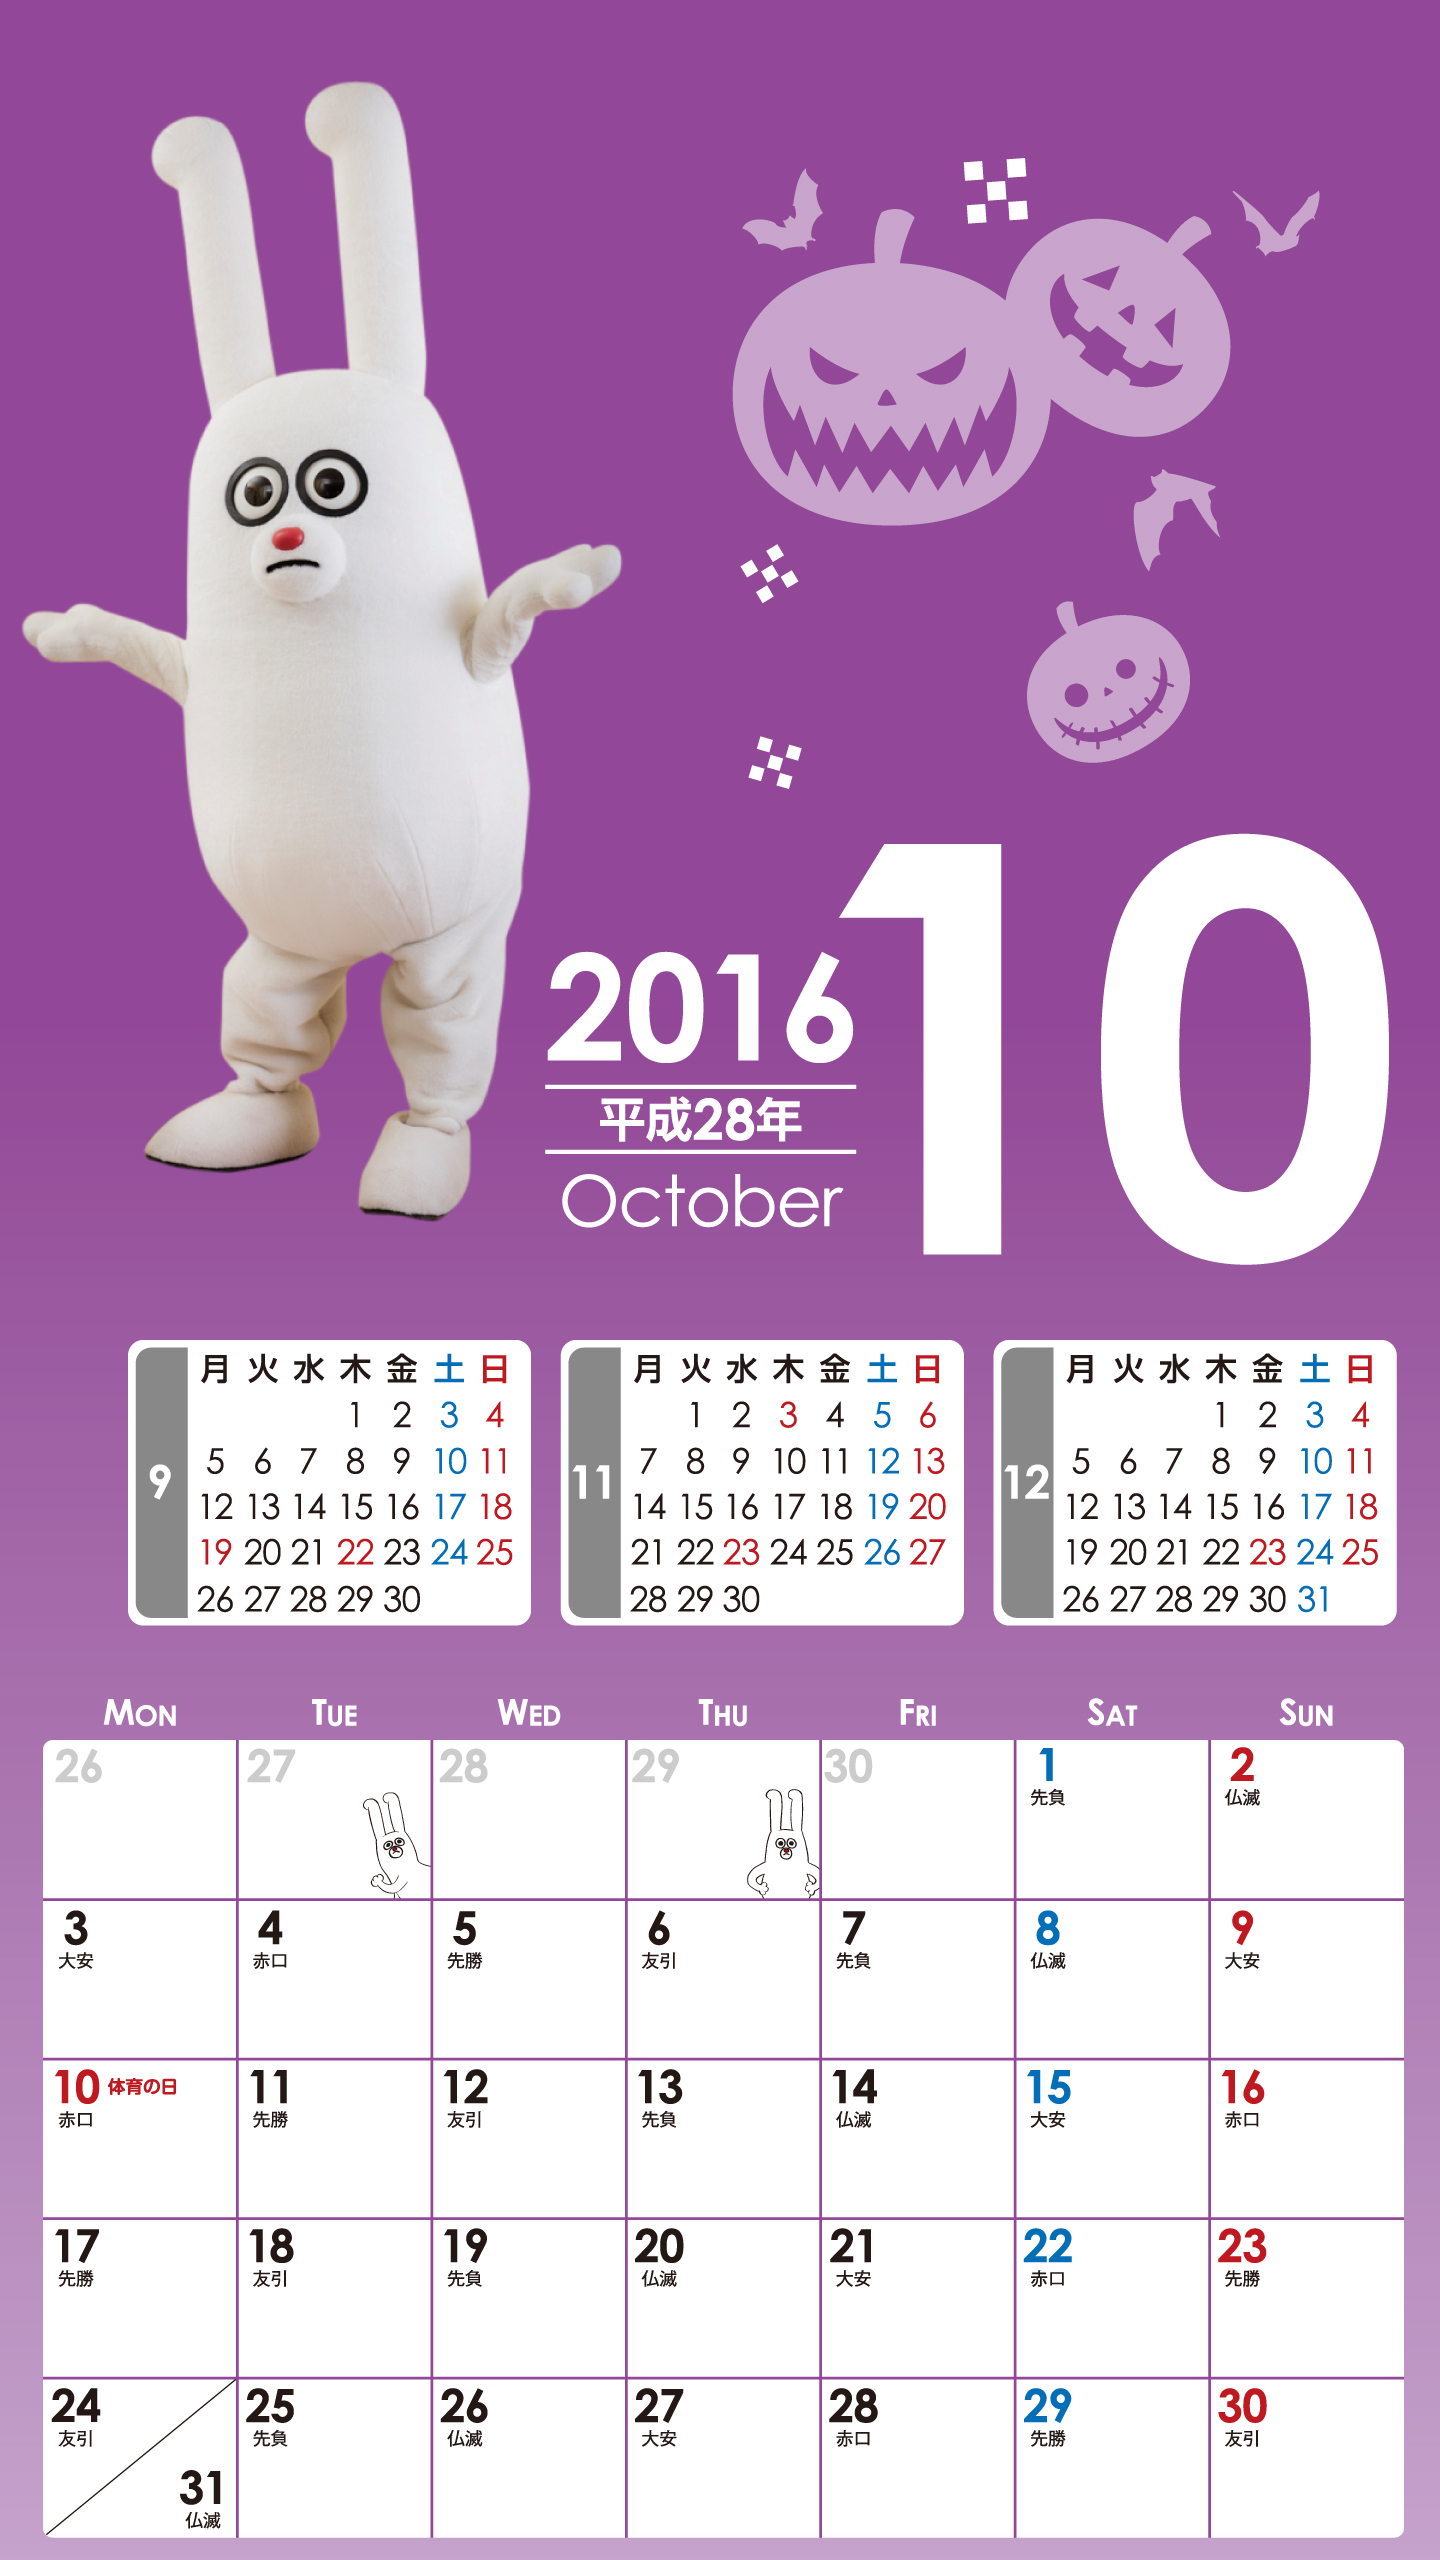 デジタルカレンダー16年10月 Bs11 イレブン いつでも無料放送